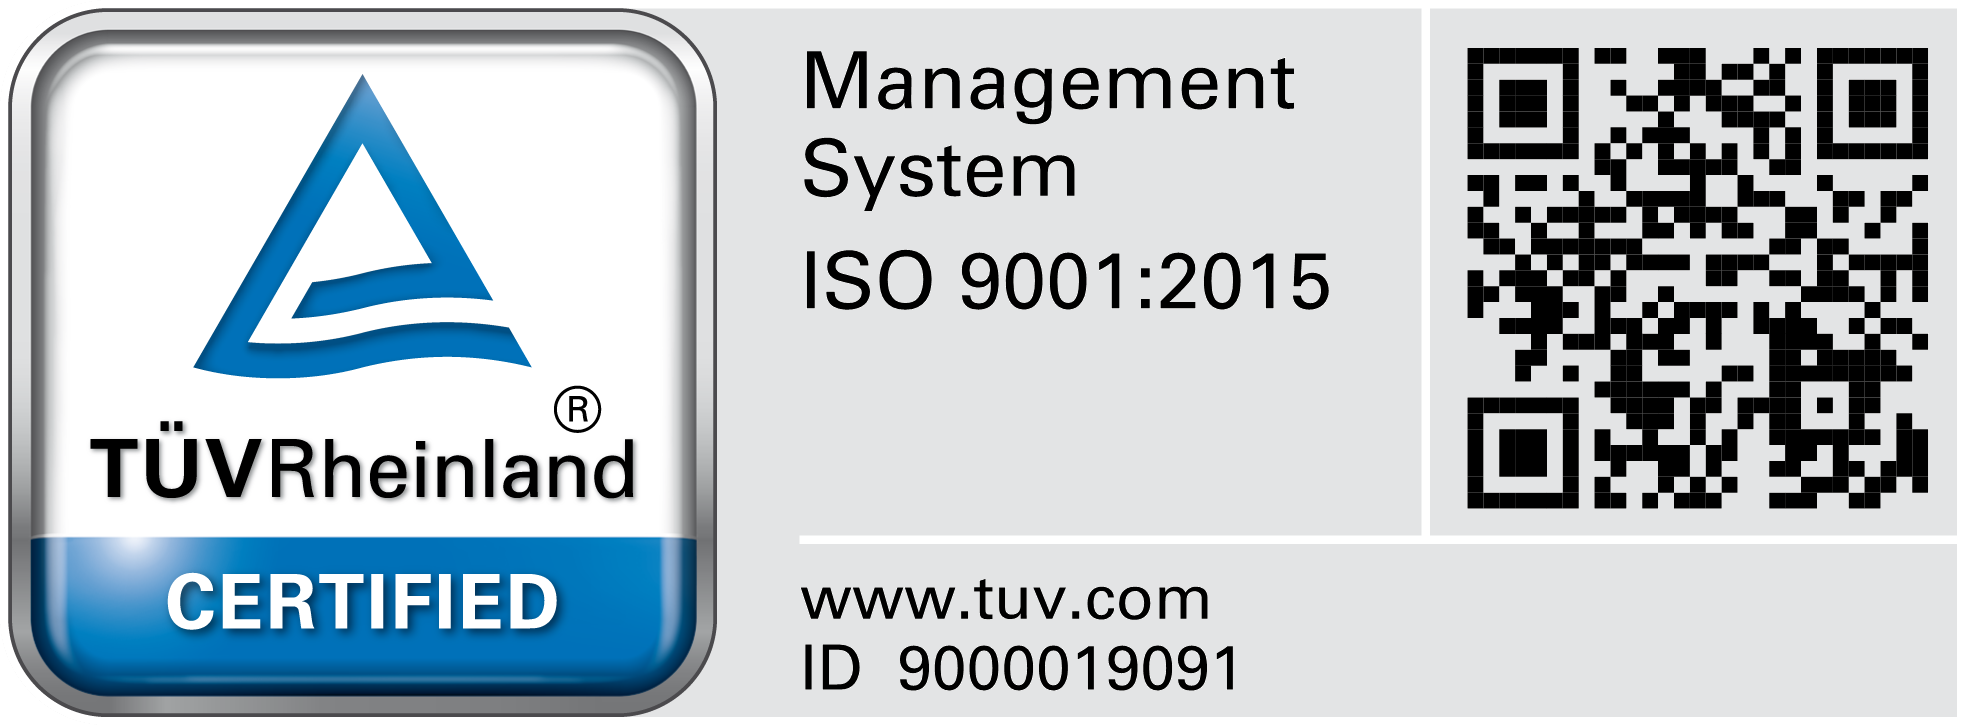 TR Testmark 9000019091 EN CMYK with QR Code